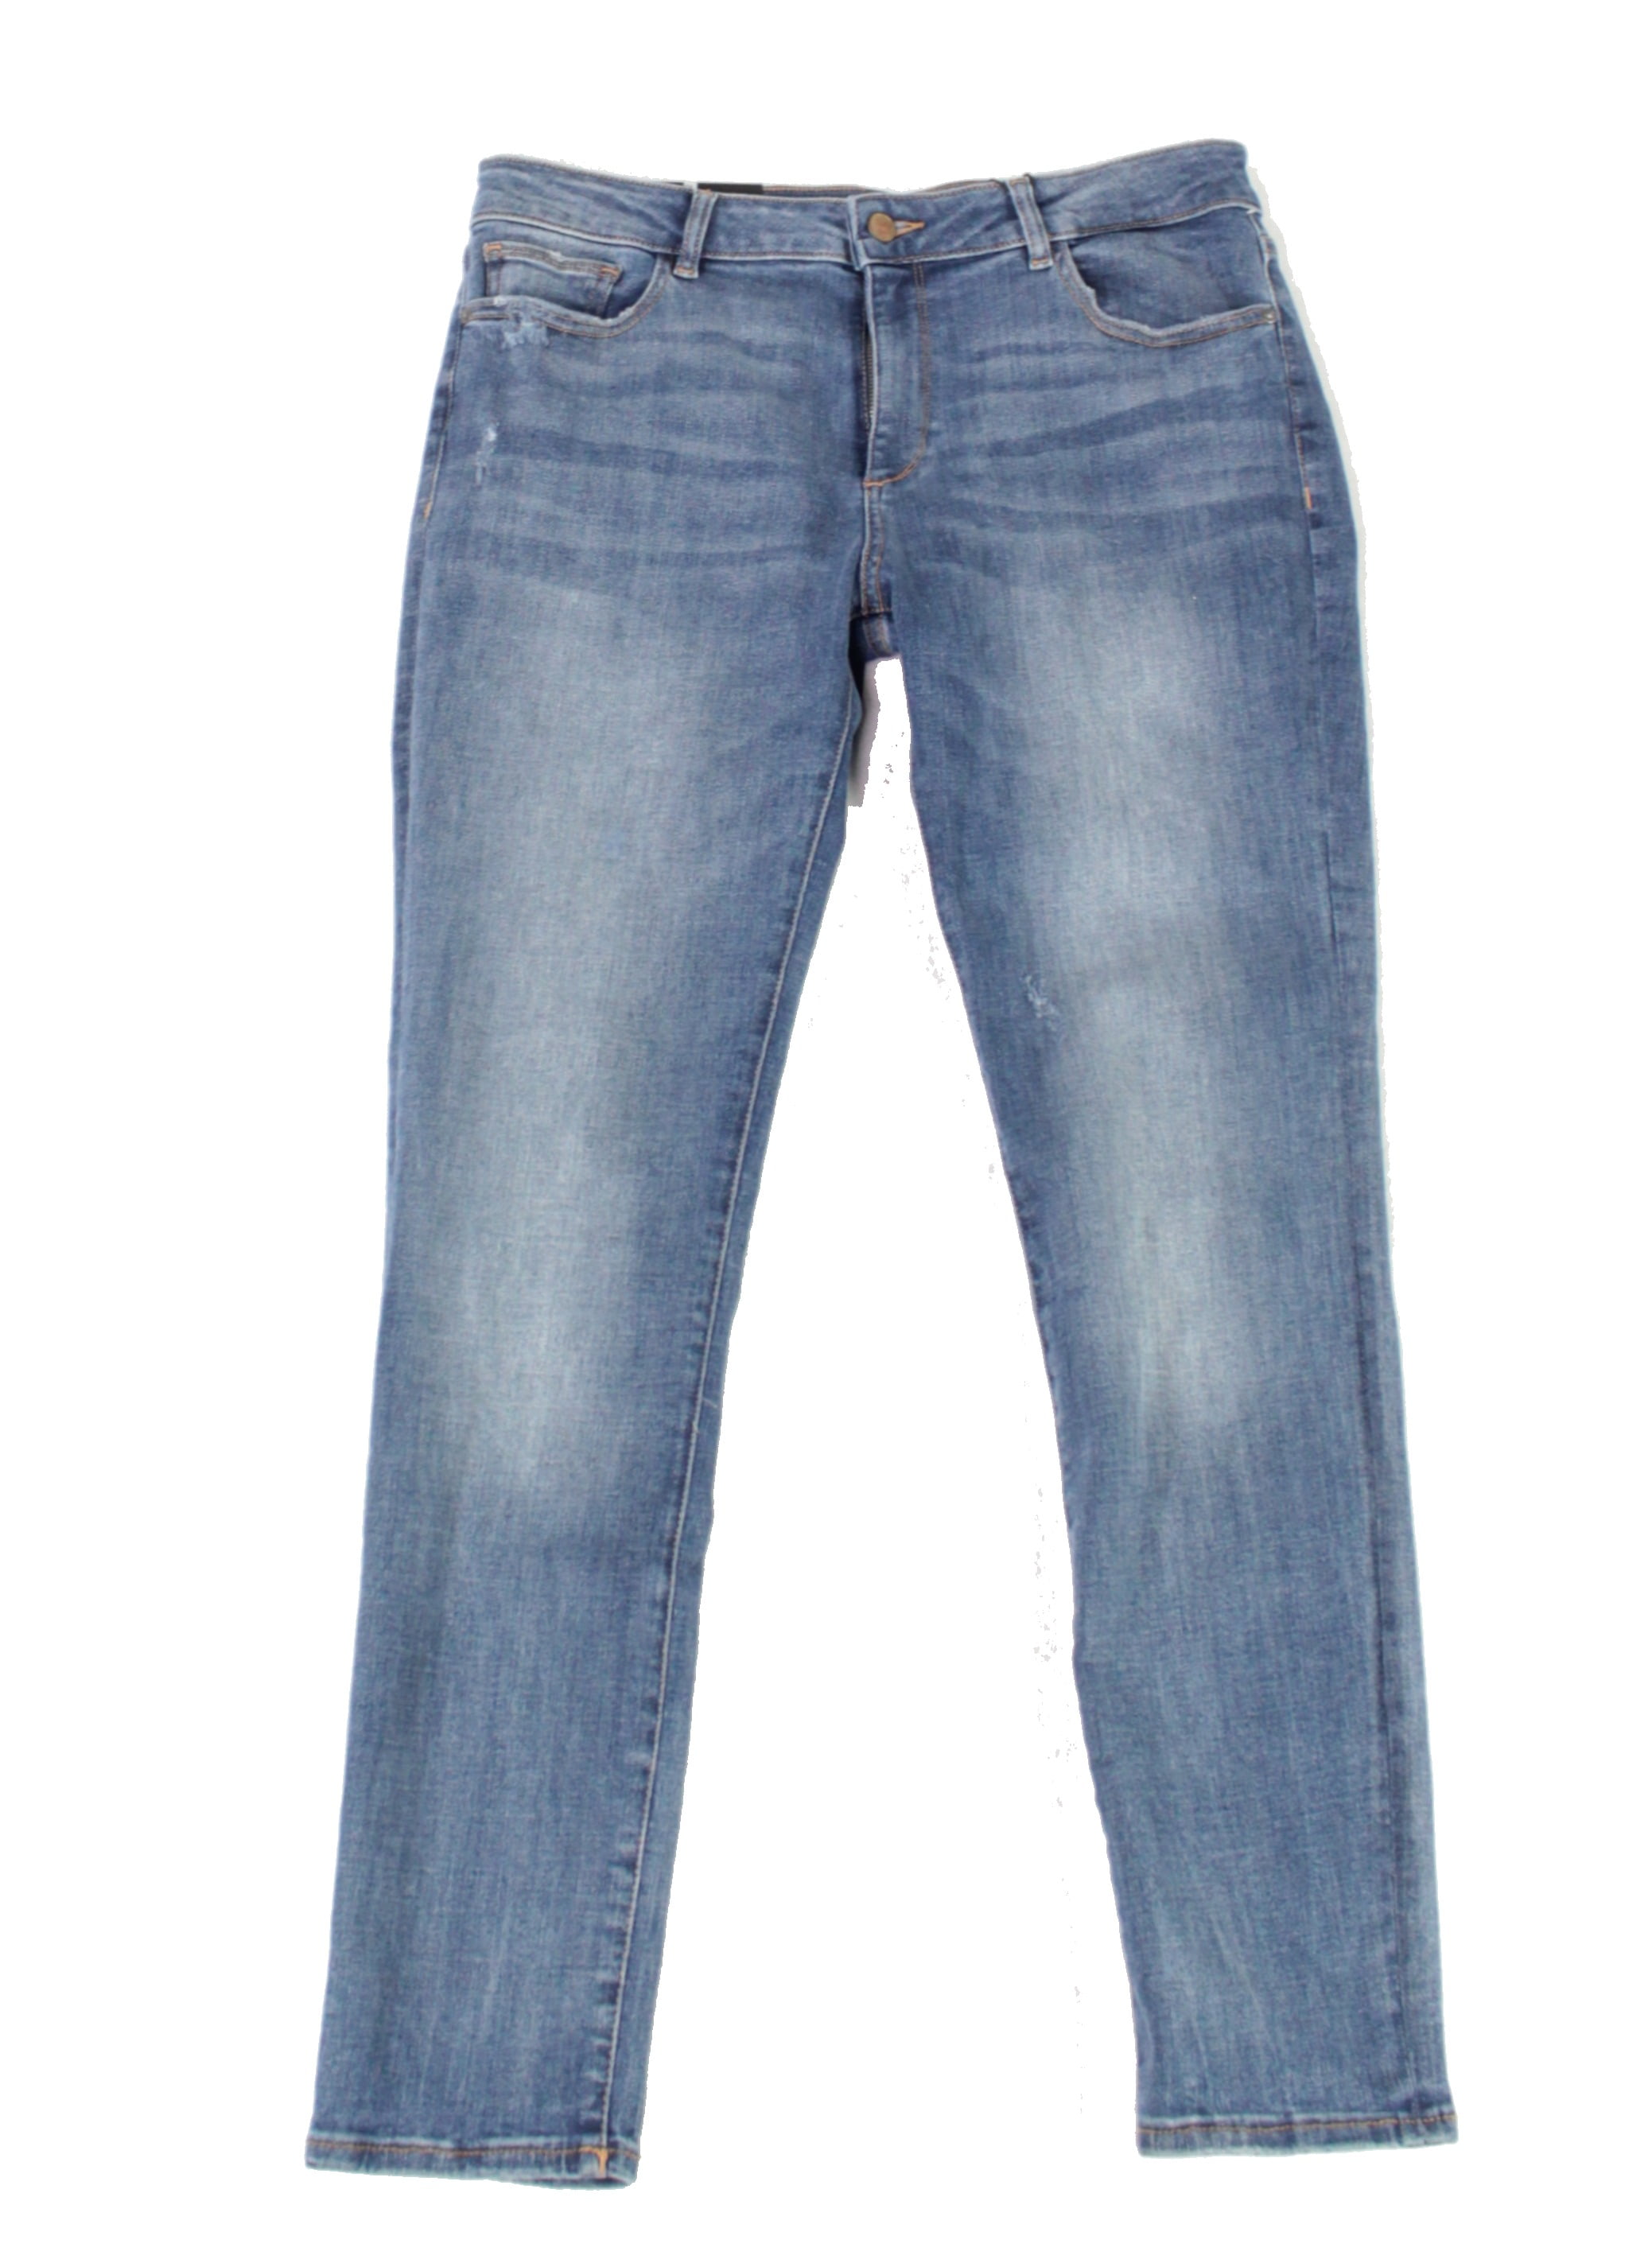 32x28 skinny jeans